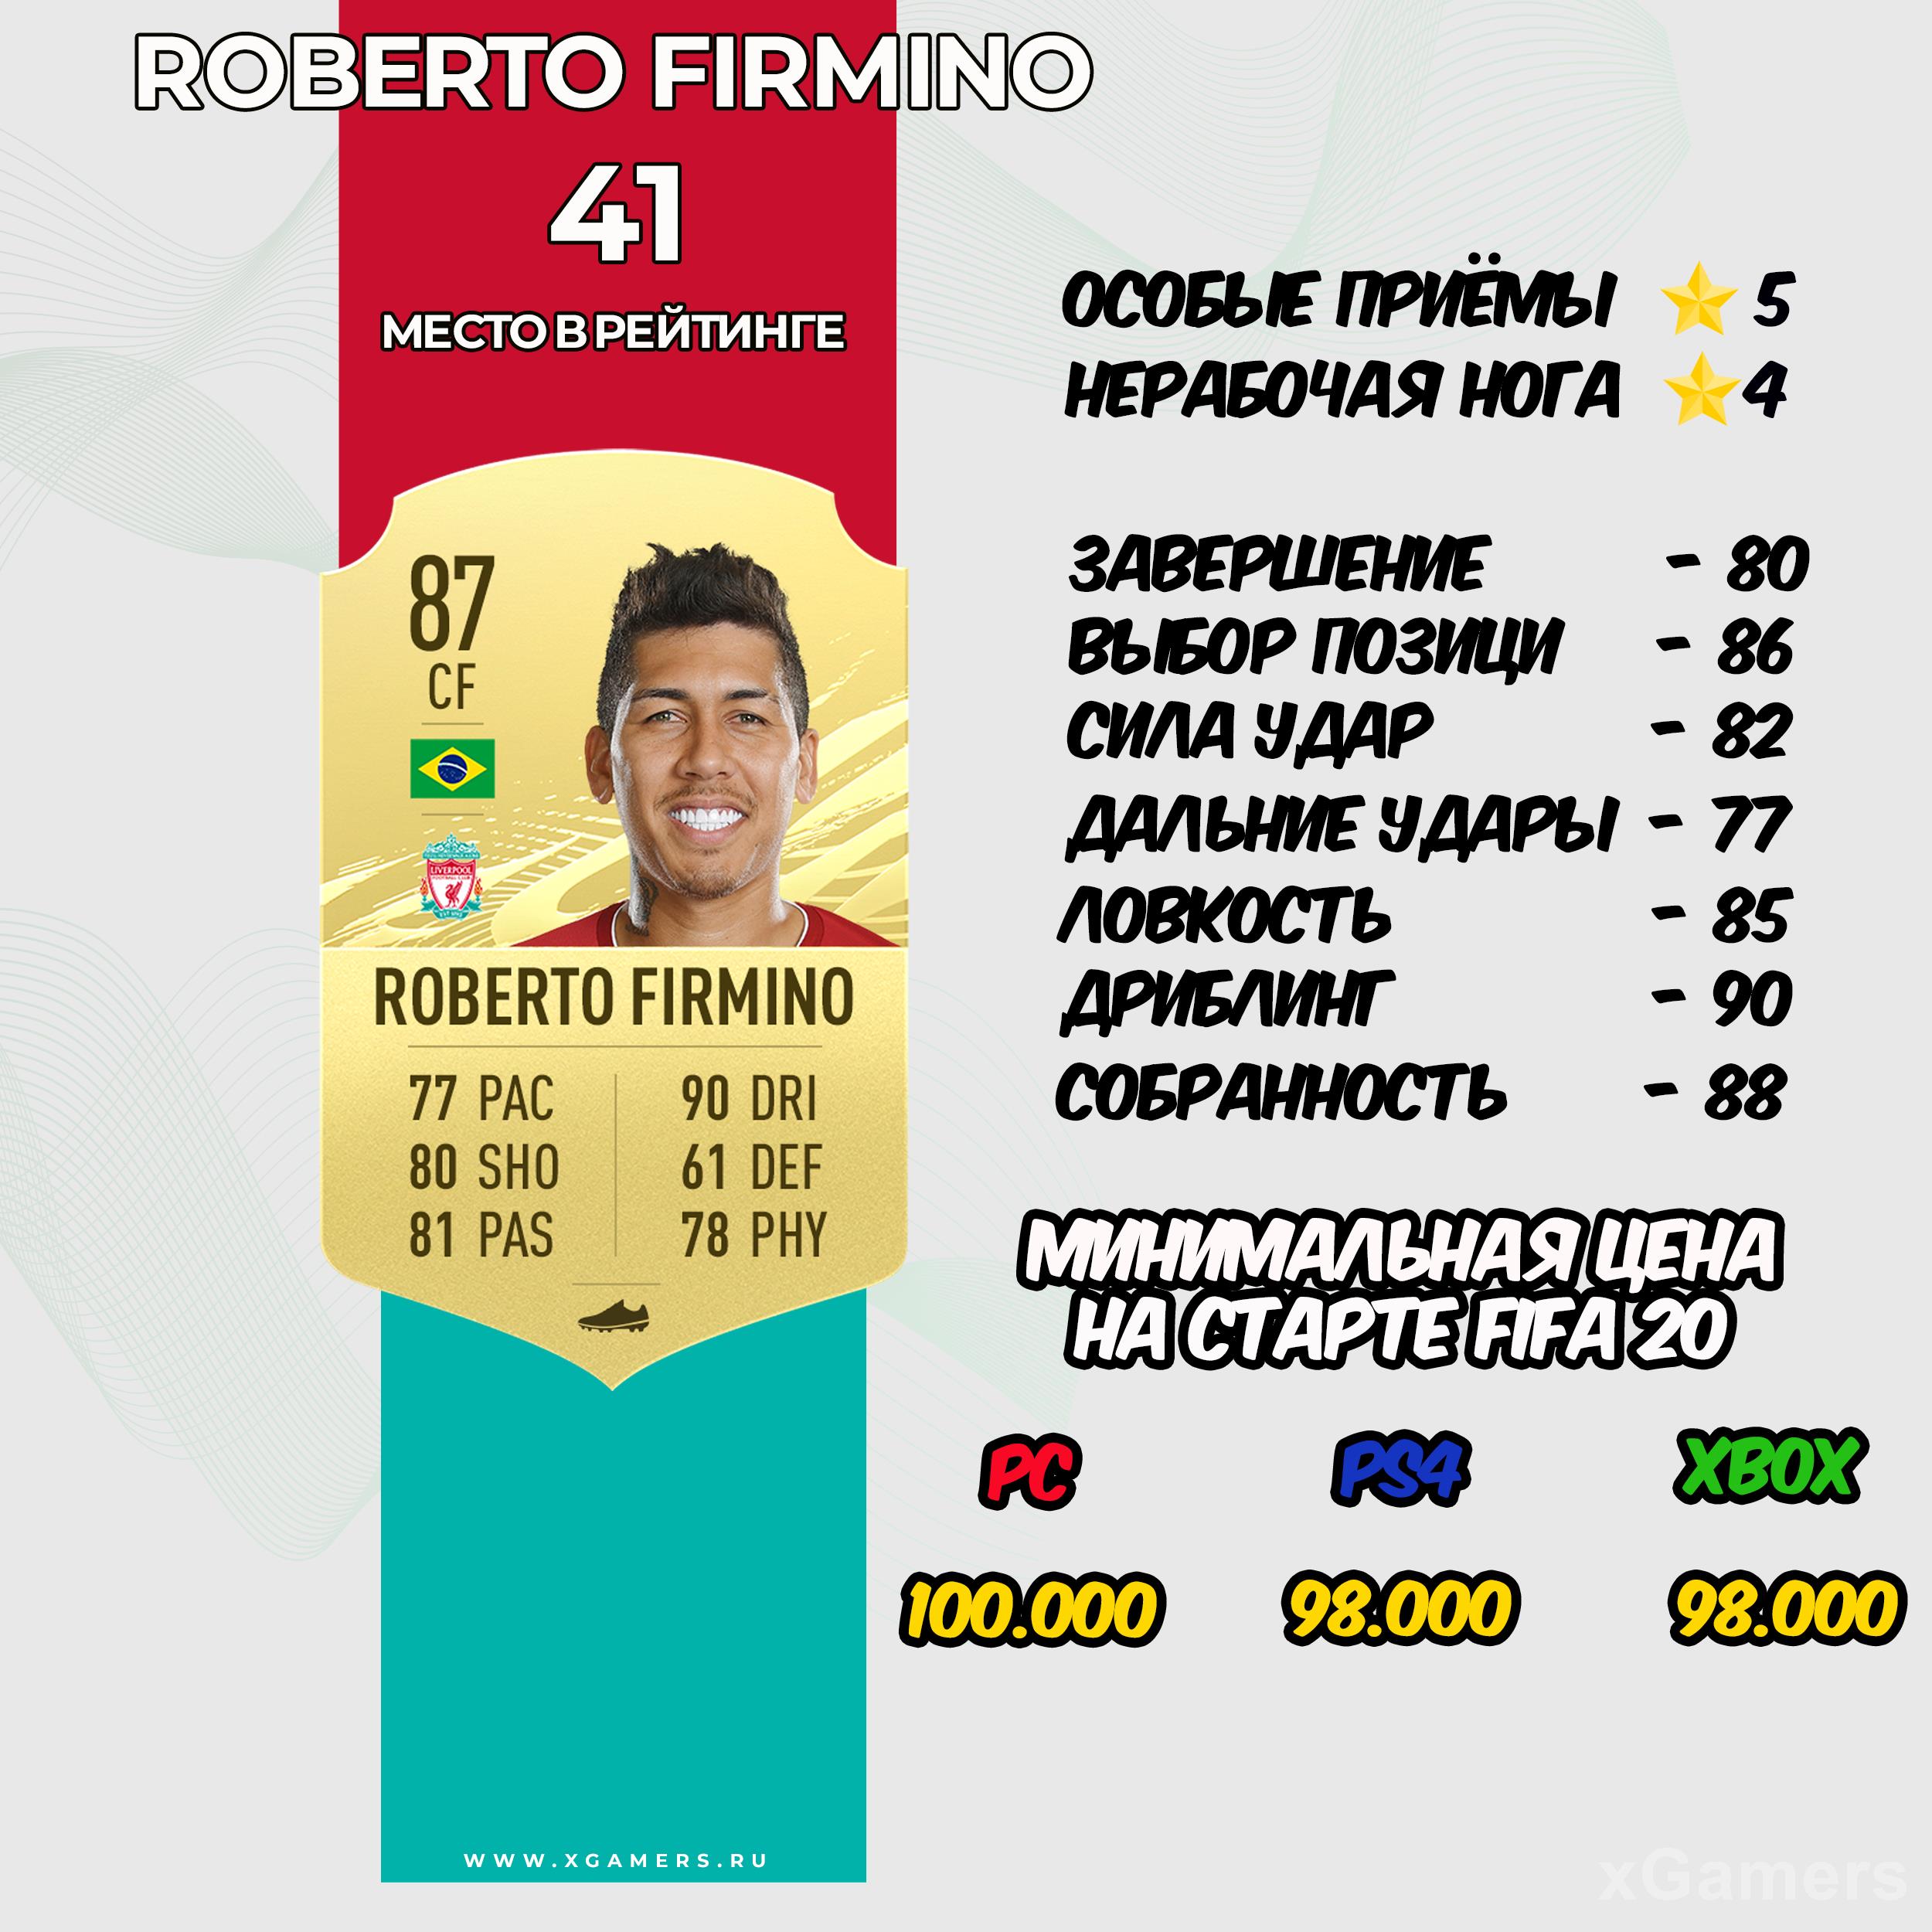 Roberto Firmino - место в рейтинге 41